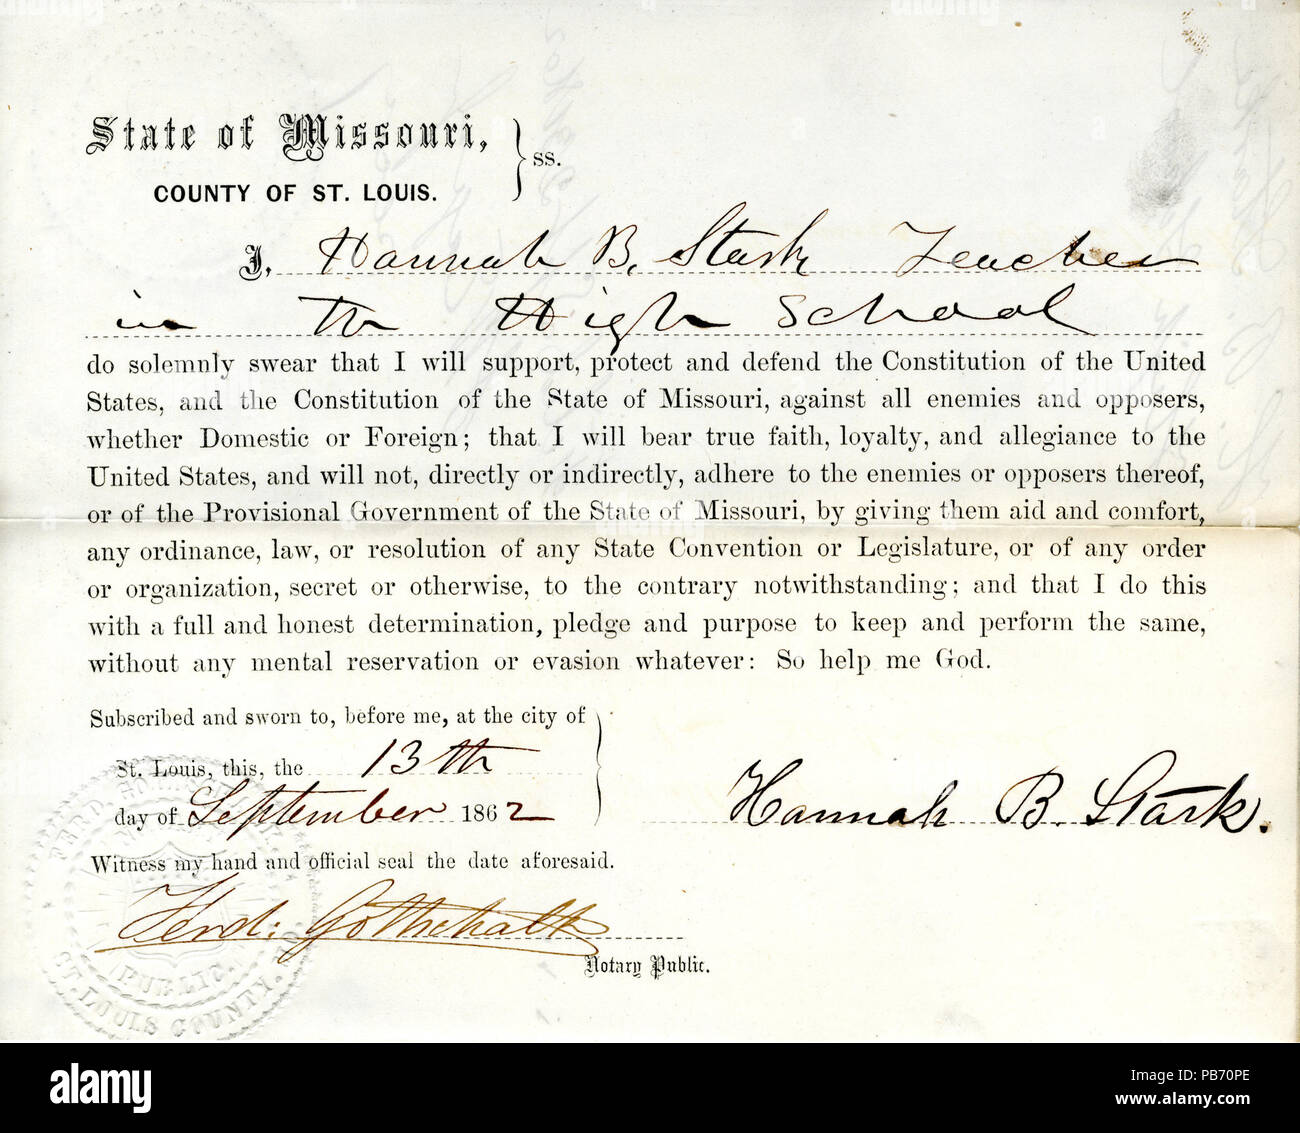 948 juramento de lealtad de Hannah B. Stark de Missorui, Condado de St.Louis Foto de stock